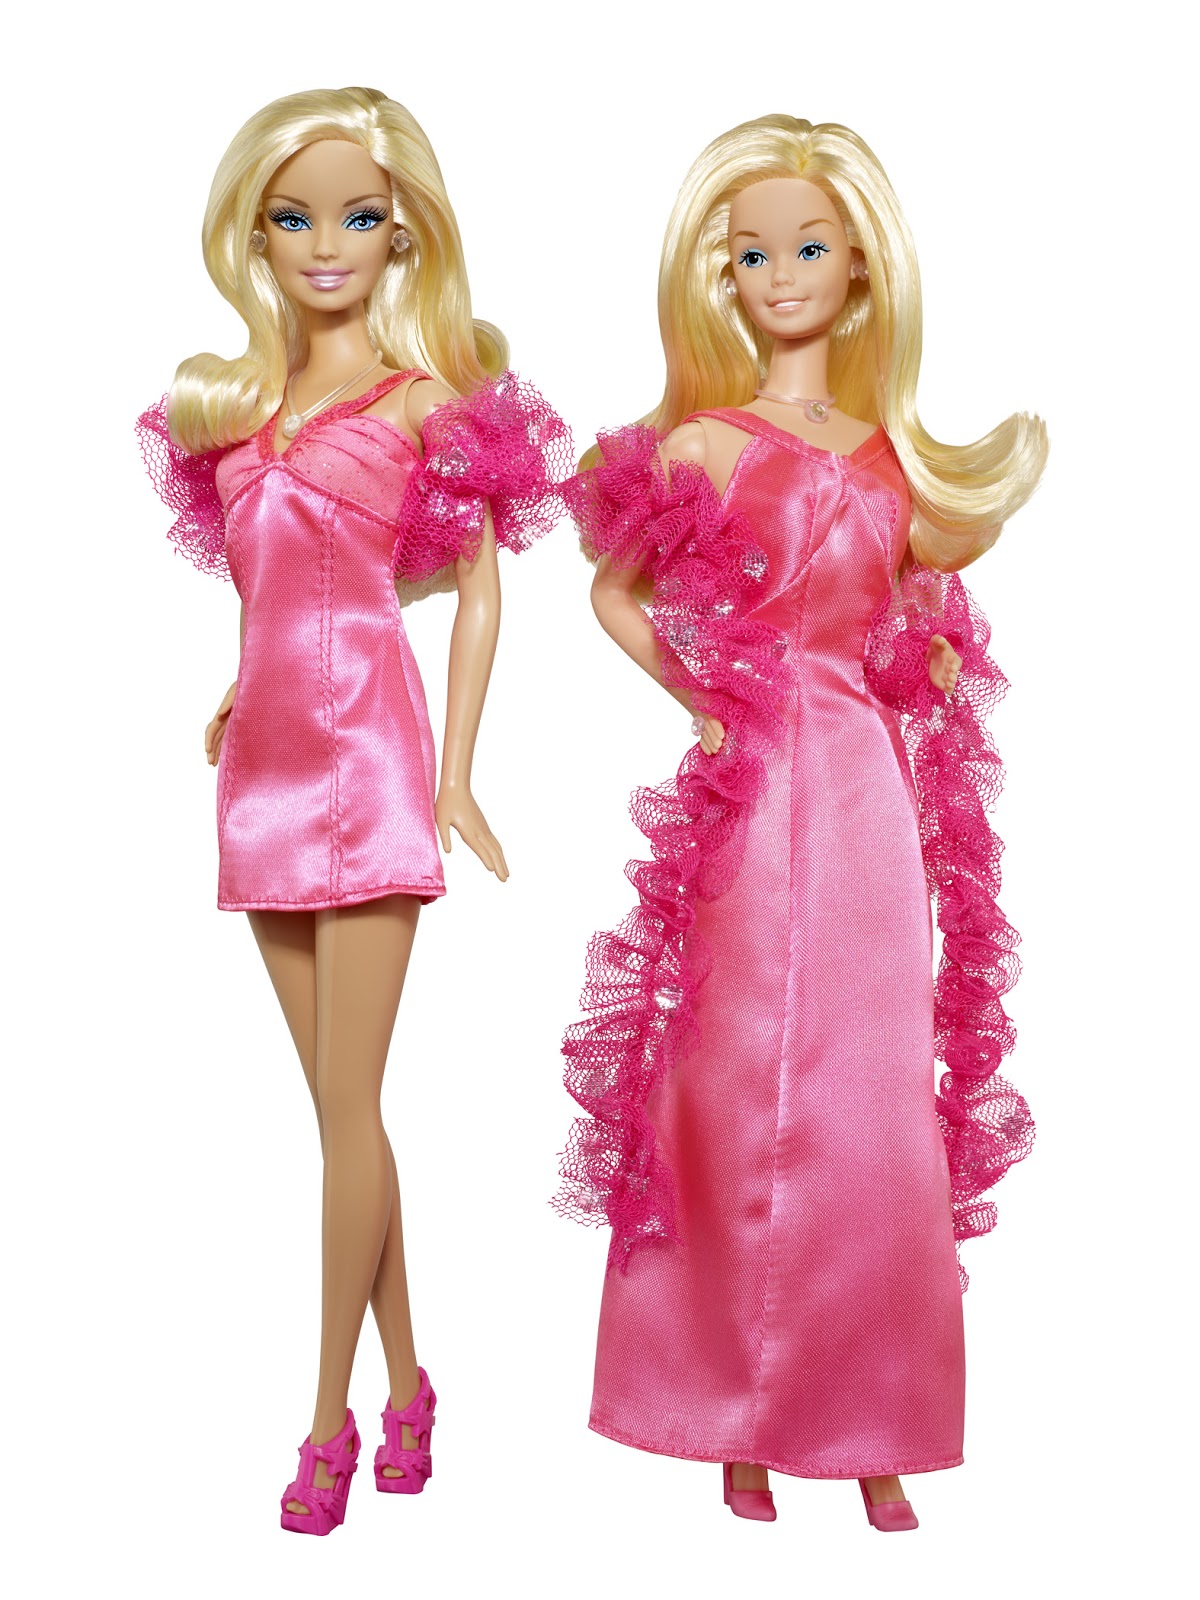 Koleksi 50+ Gambar Barbie Cantik dan Imut @ wallpapersgallerys ...